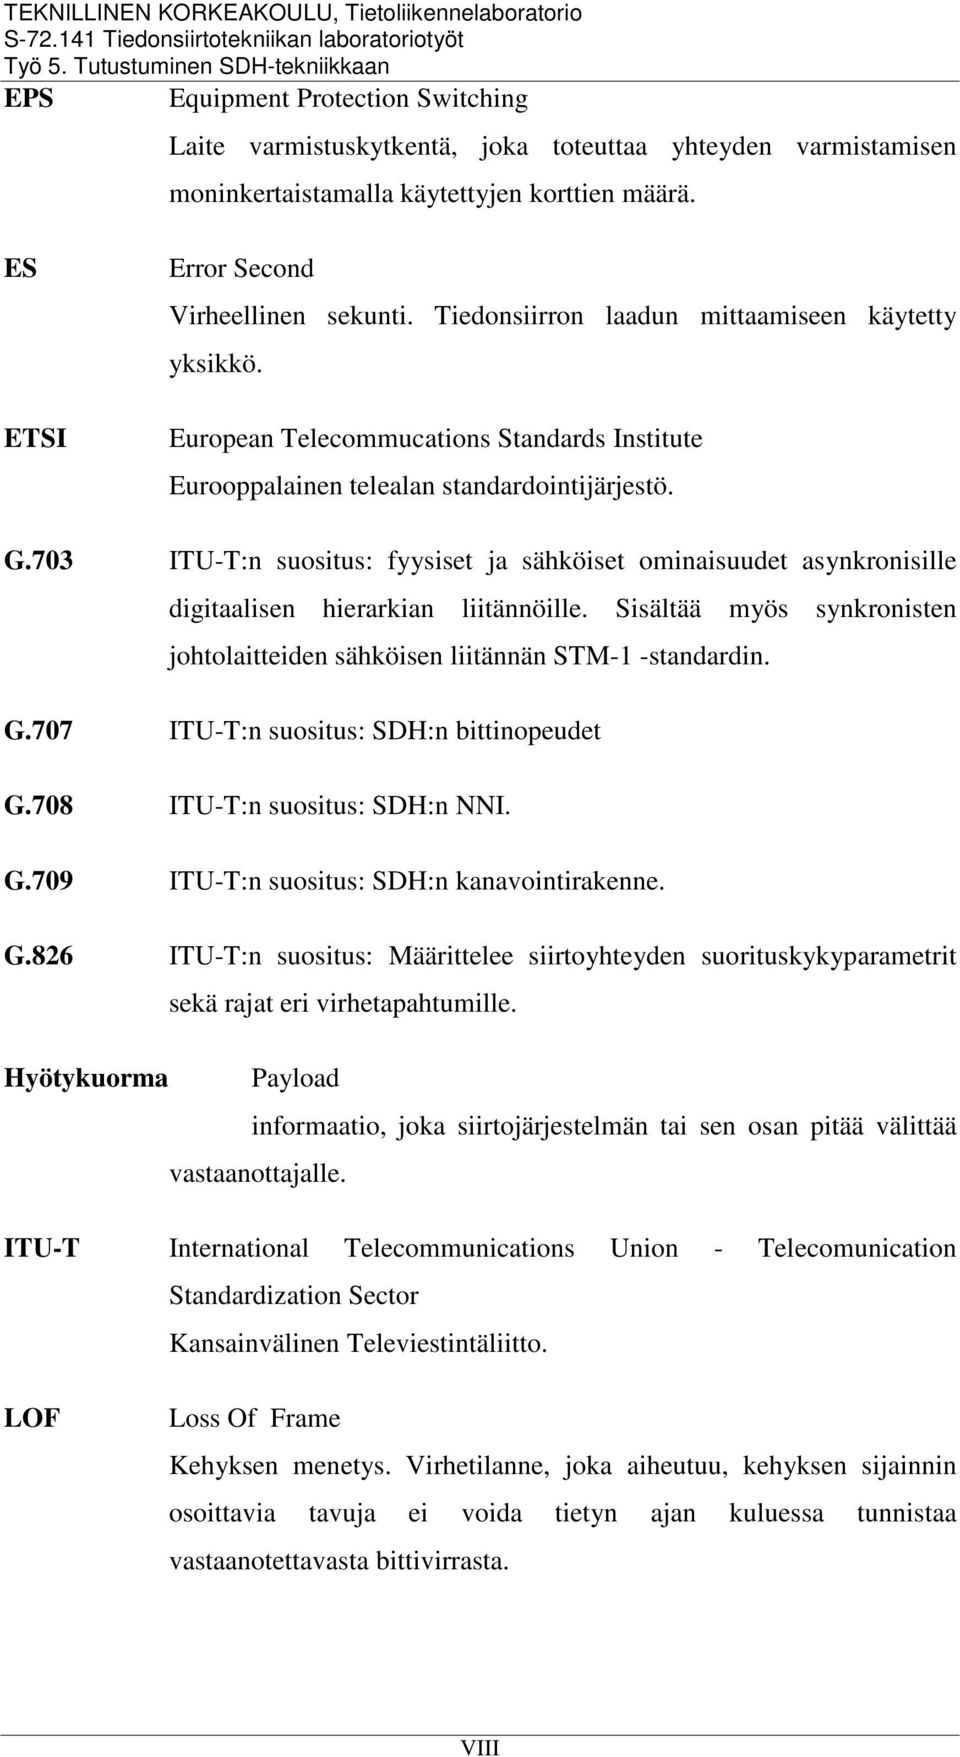 703 ITU-T:n suositus: fyysiset ja sähköiset ominaisuudet asynkronisille digitaalisen hierarkian liitännöille. Sisältää myös synkronisten johtolaitteiden sähköisen liitännän STM-1 -standardin. G.